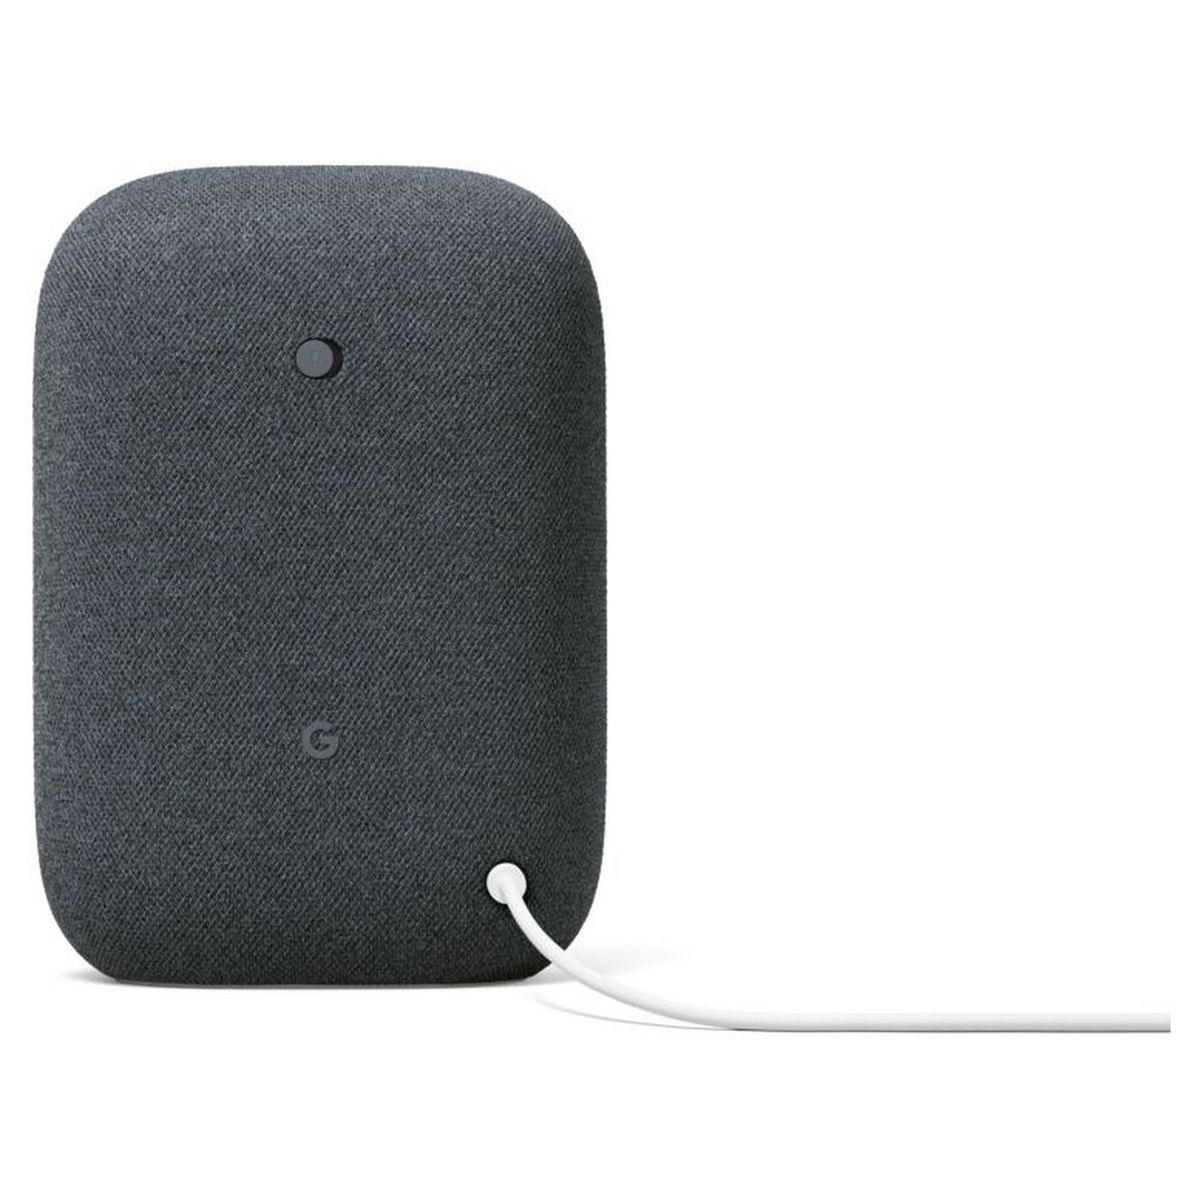 L'enceinte connectée Google Nest Audio est à un prix bien plus